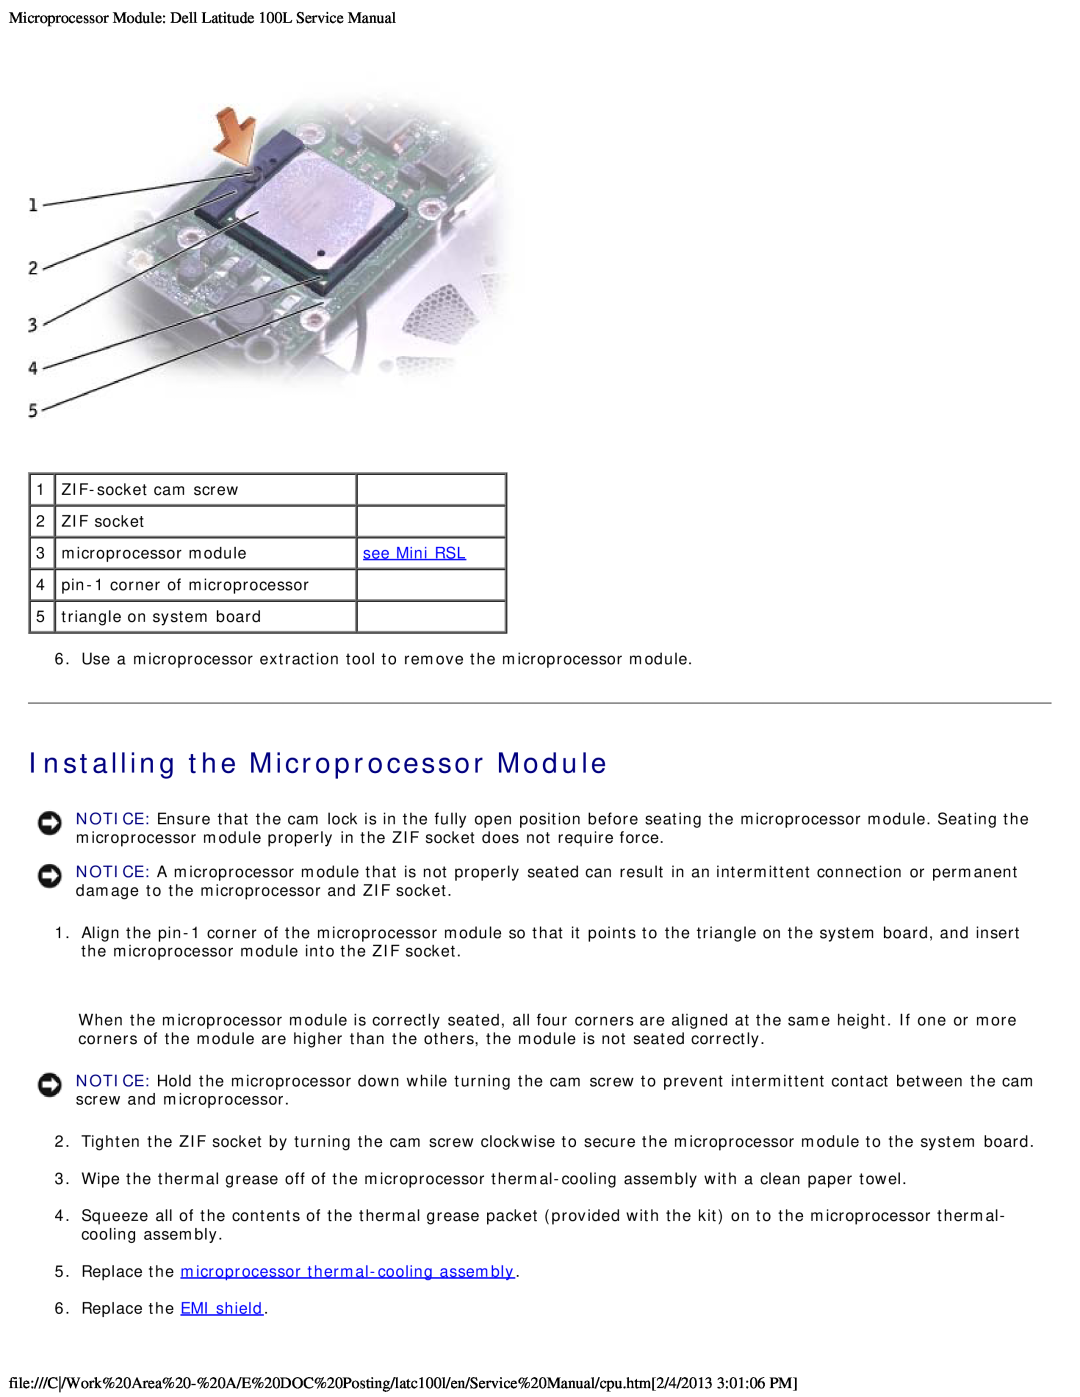 Dell 100L Installing the Microprocessor Module, Replace the microprocessor thermal-cooling assembly, see Mini RSL 